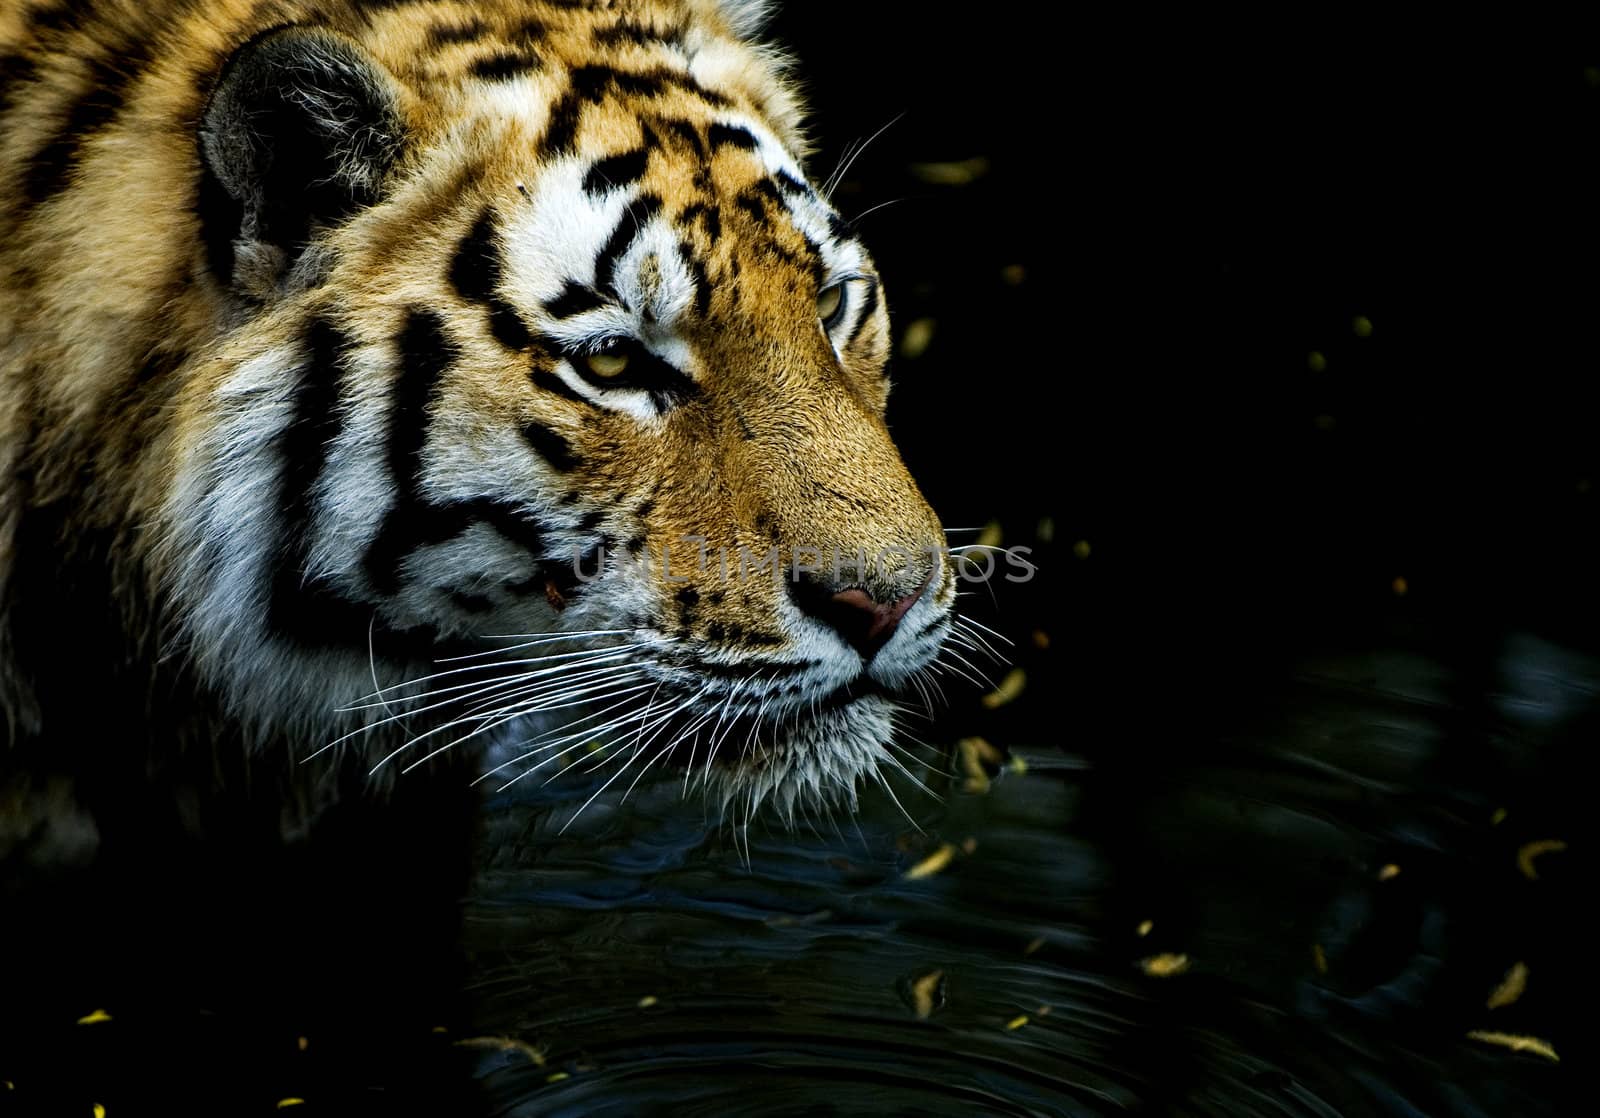 Tiger hunting in low dark water, very focused on its prey.